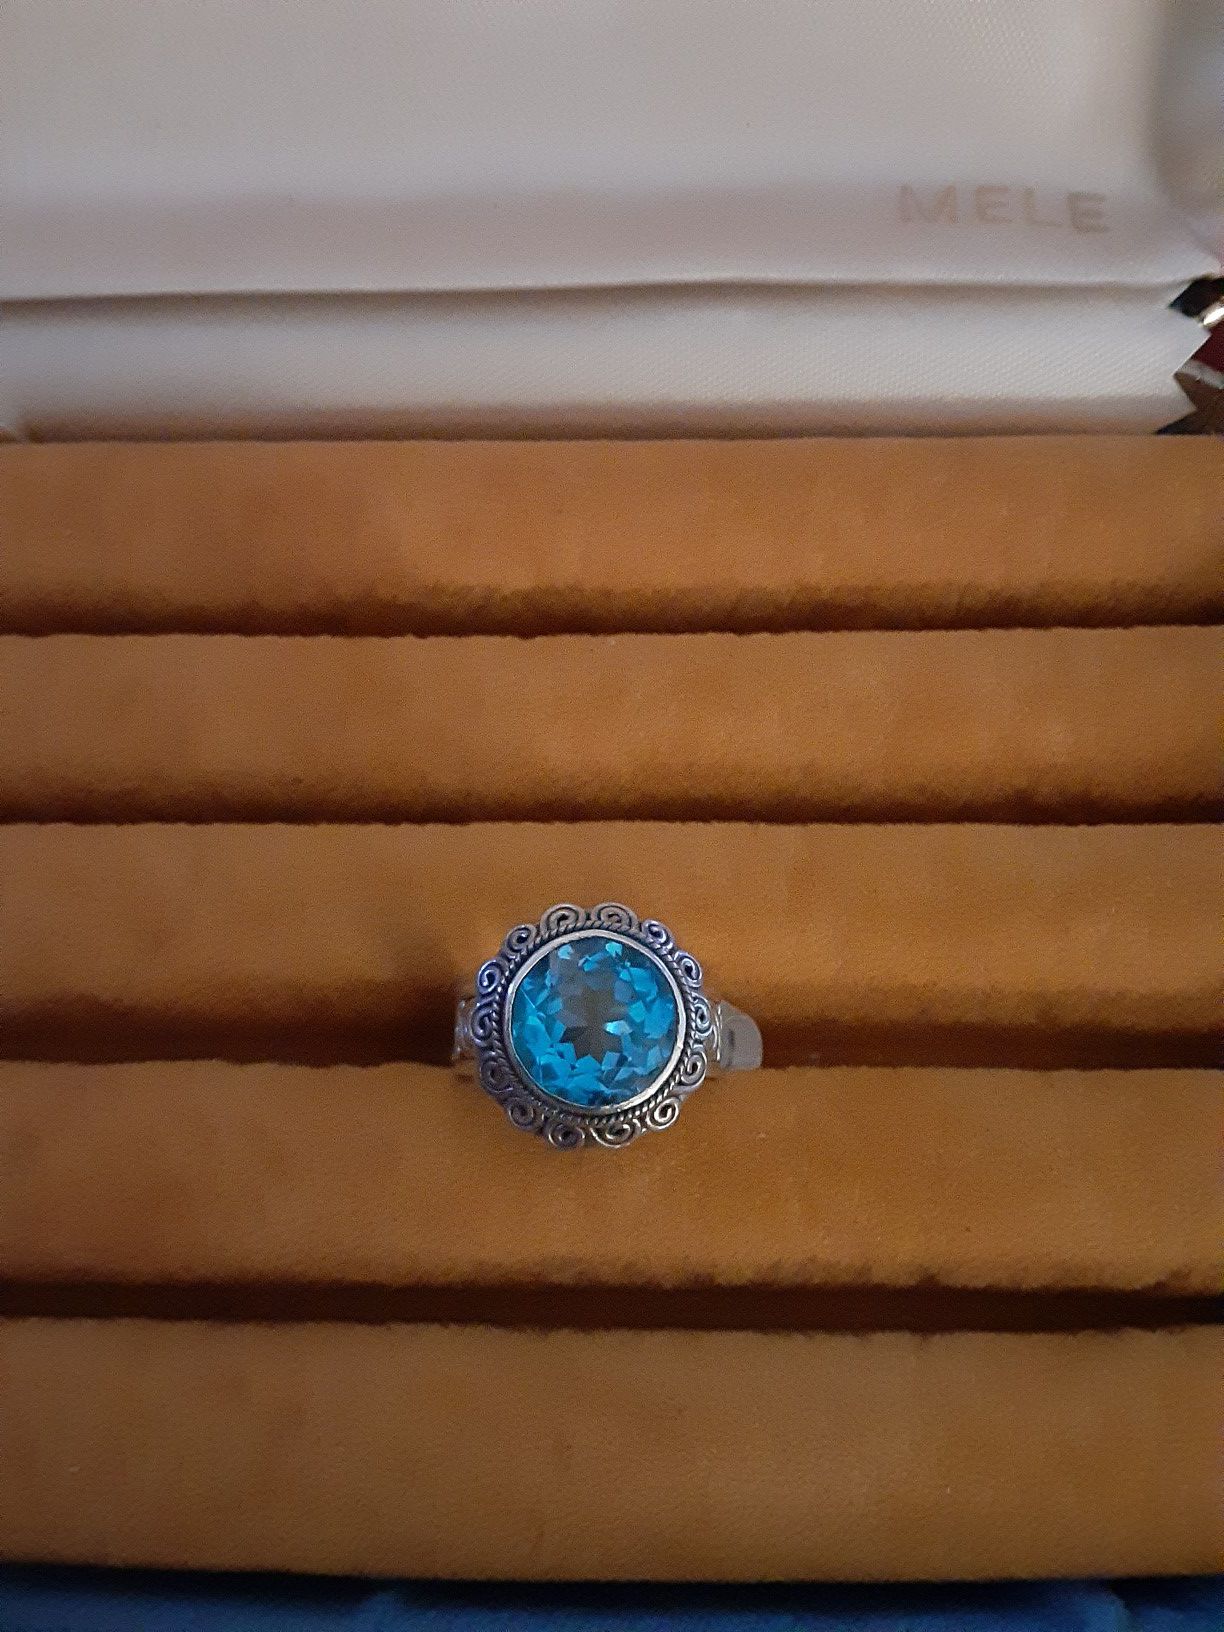 Size 5 1/2 blue gemstone ring